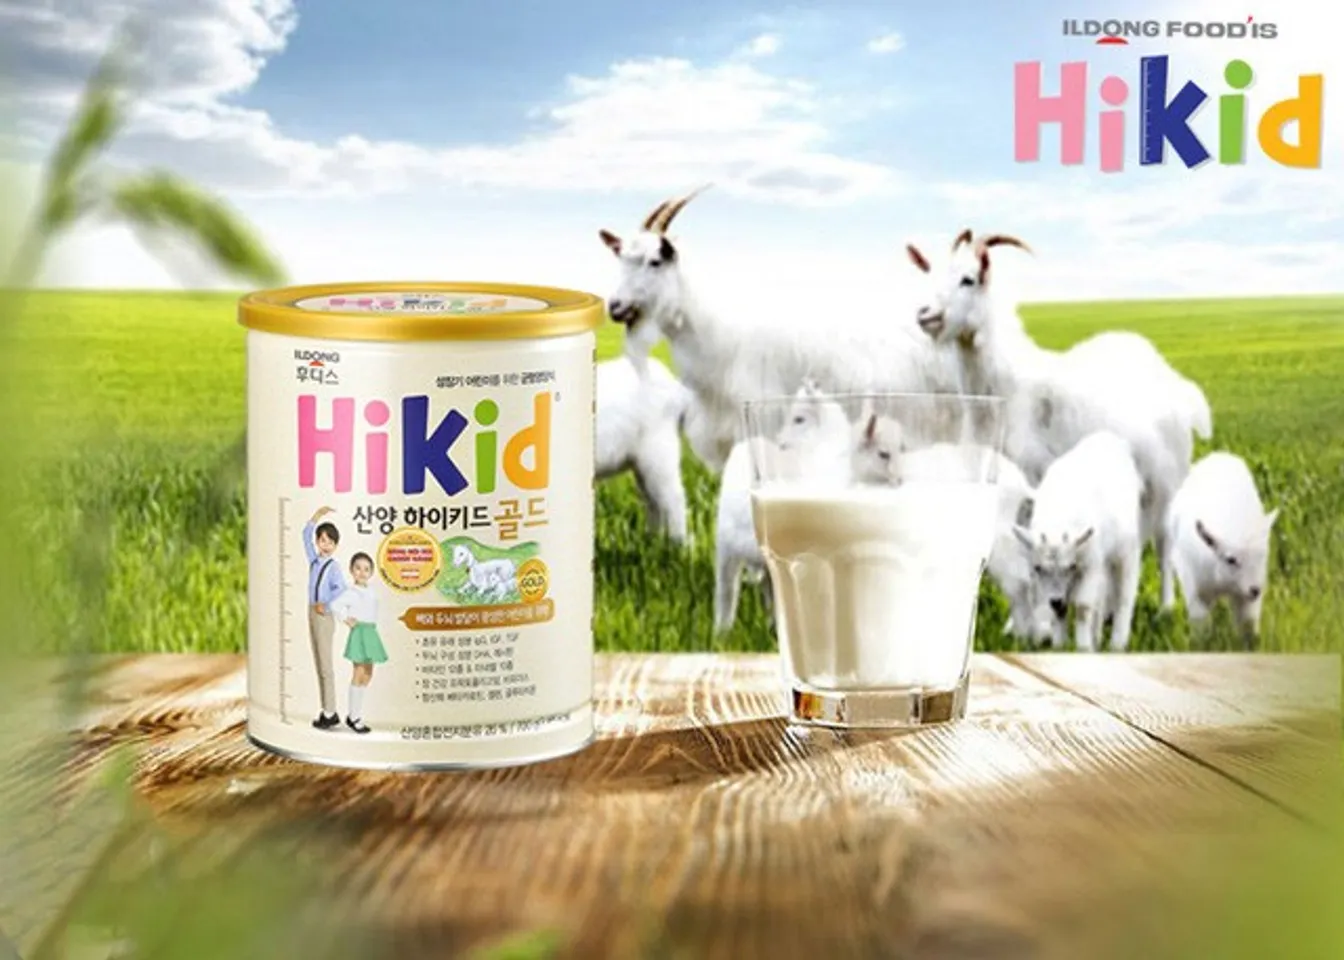 Cách sử dụng sữa Hikid Hàn Quốc chính xác nhất